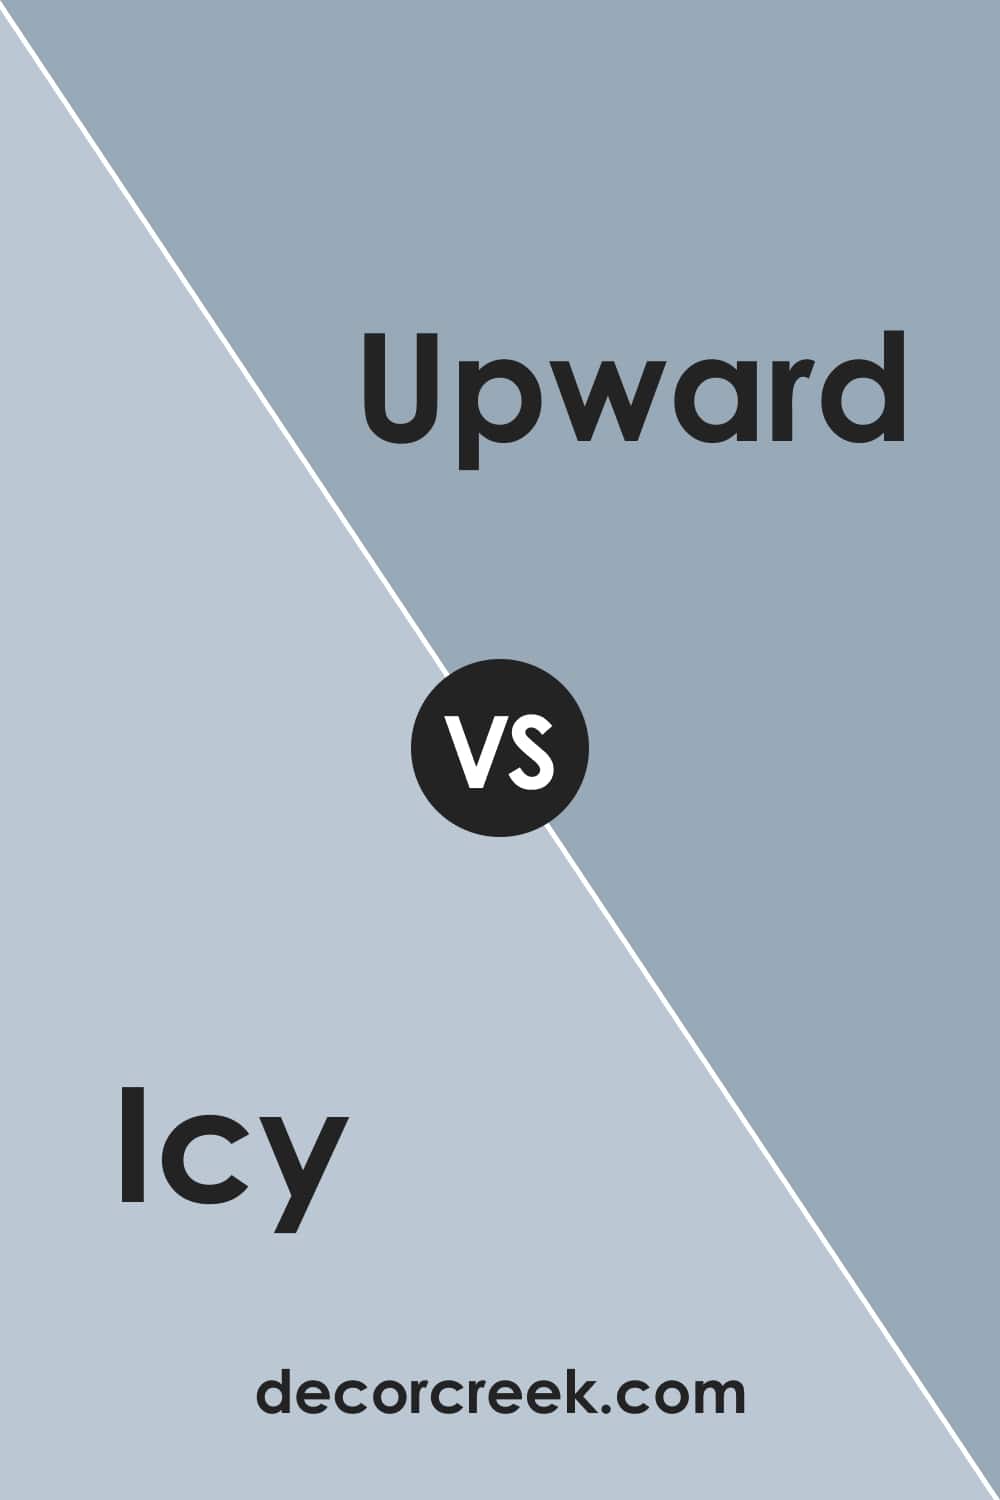 Icy vs. Upward